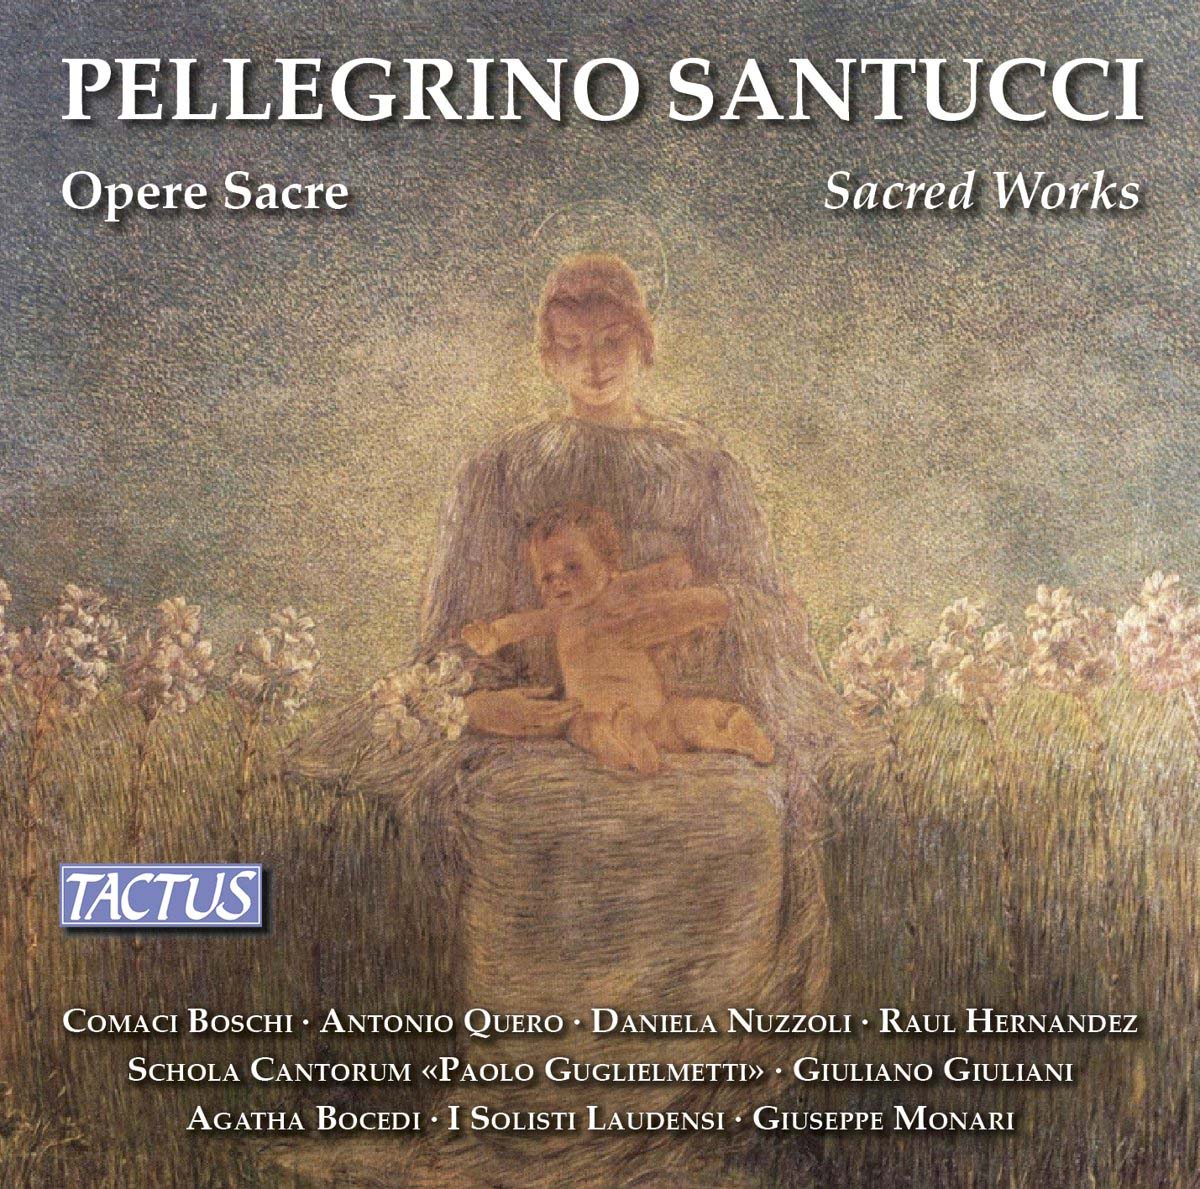 Audio Cd Santucci - Opere Sacre - Solisti Laudensi (3 Cd) NUOVO SIGILLATO, EDIZIONE DEL 05/05/2017 SUBITO DISPONIBILE